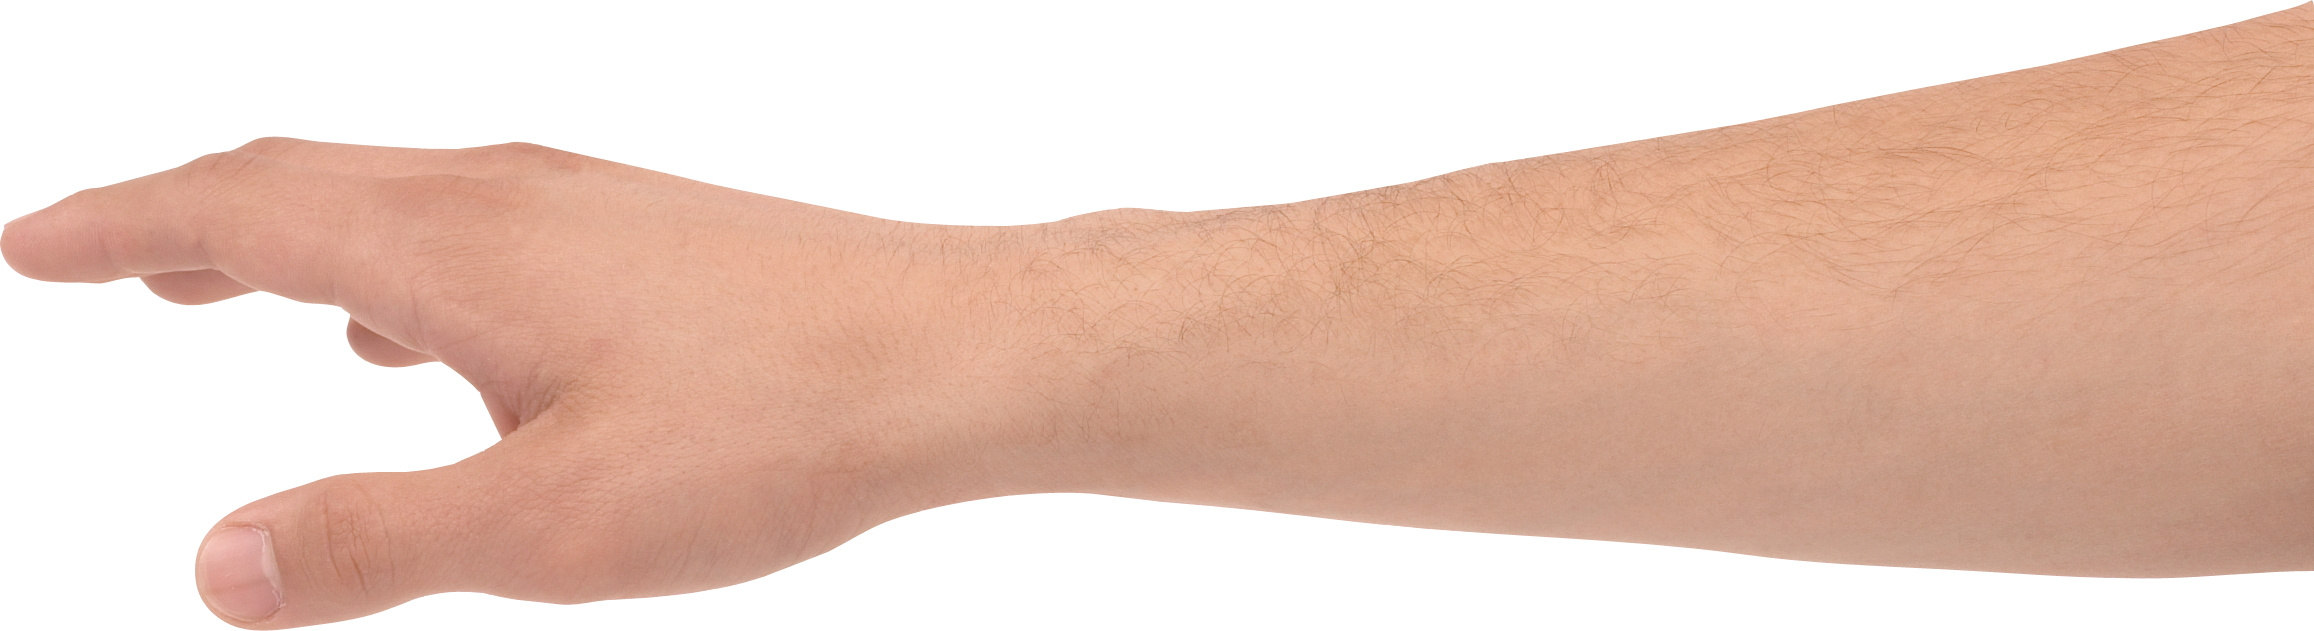 skin clipart hand grab